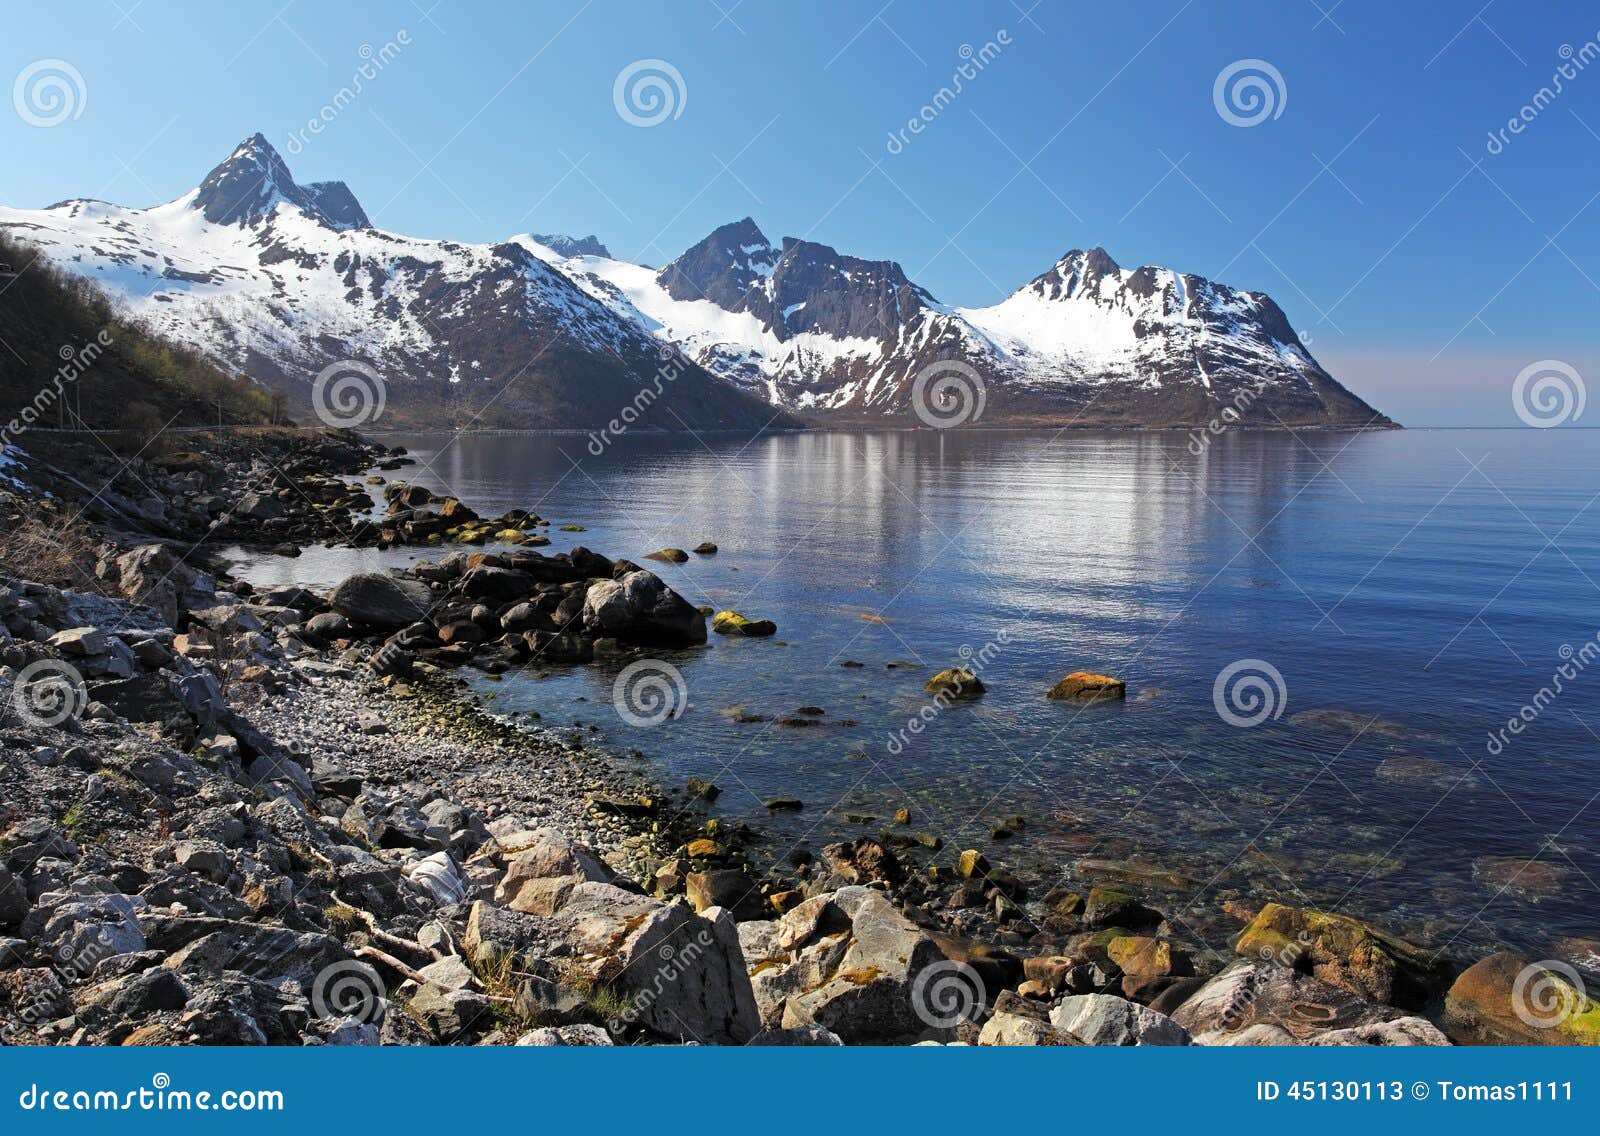 norway fjord in senja, norway